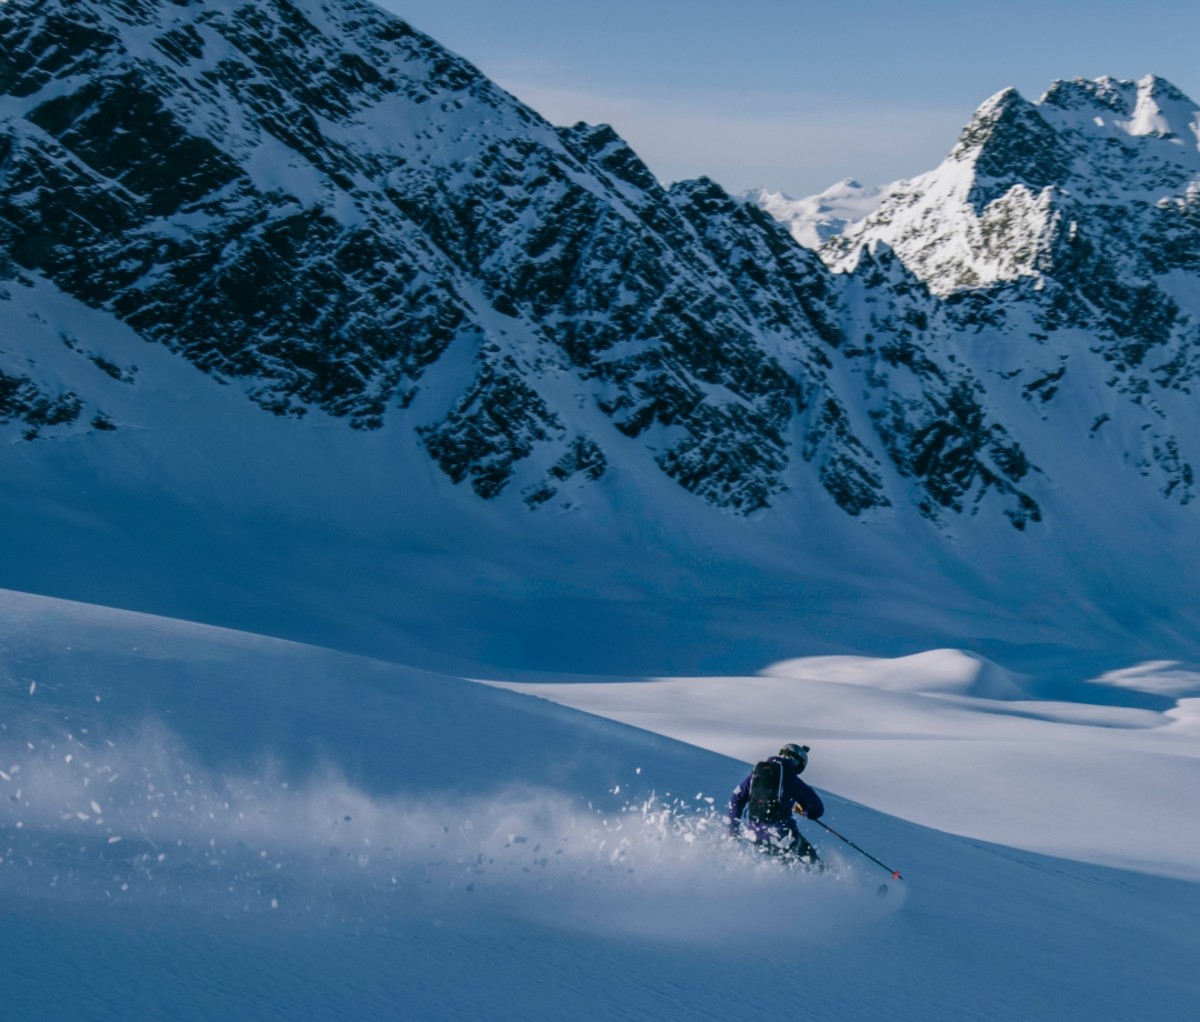 Heli-skiing in Alaska